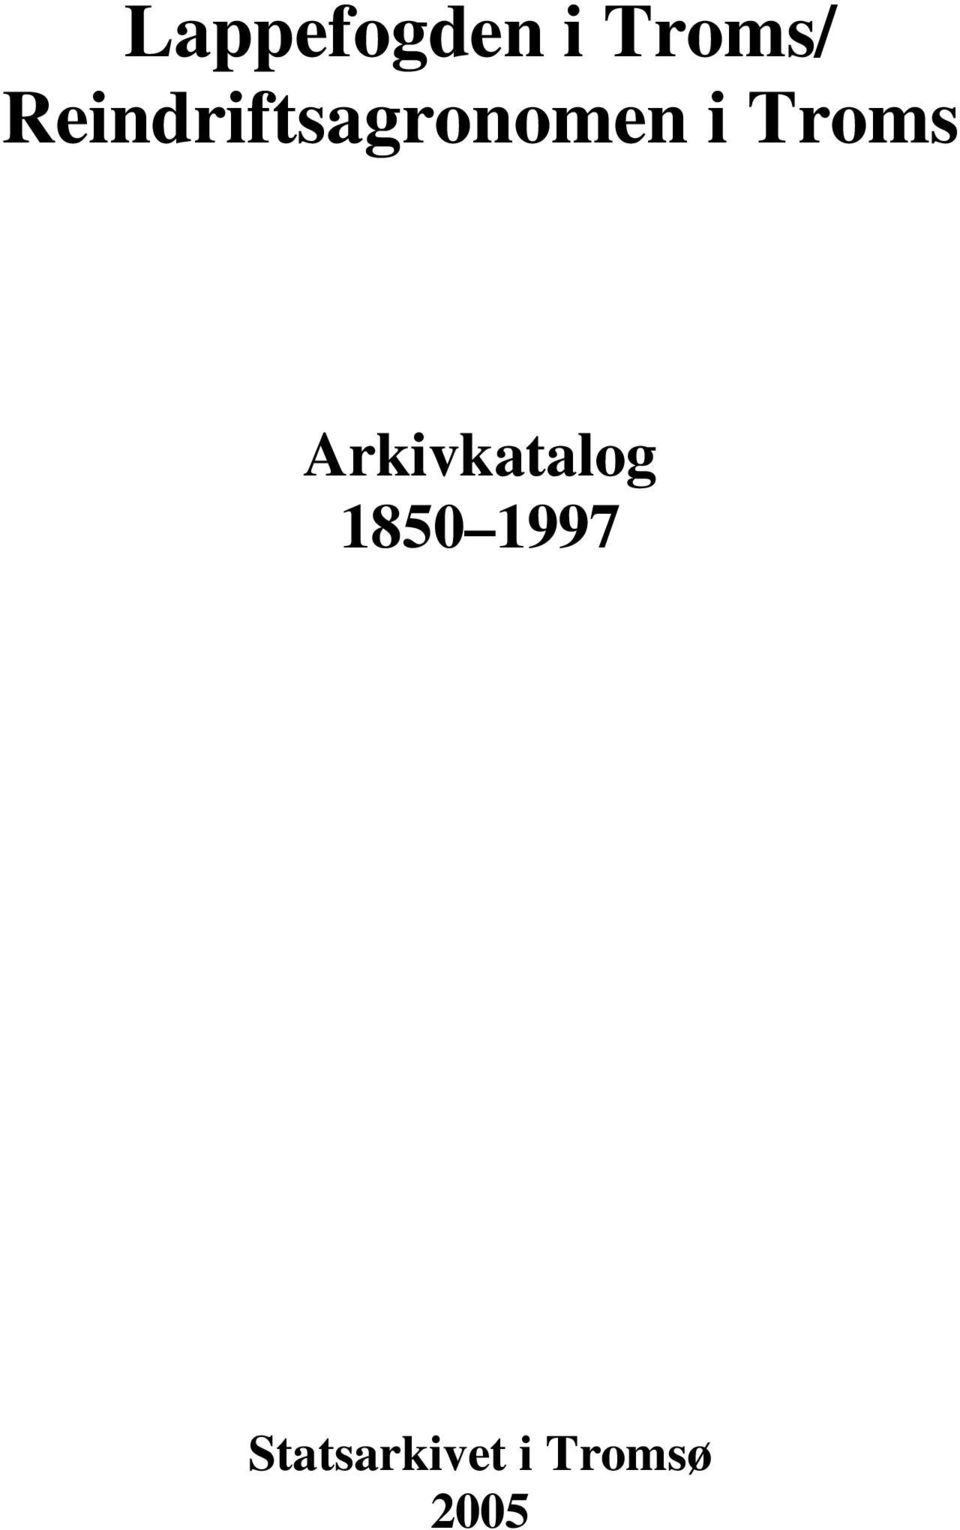 Troms Arkivkatalog 1850